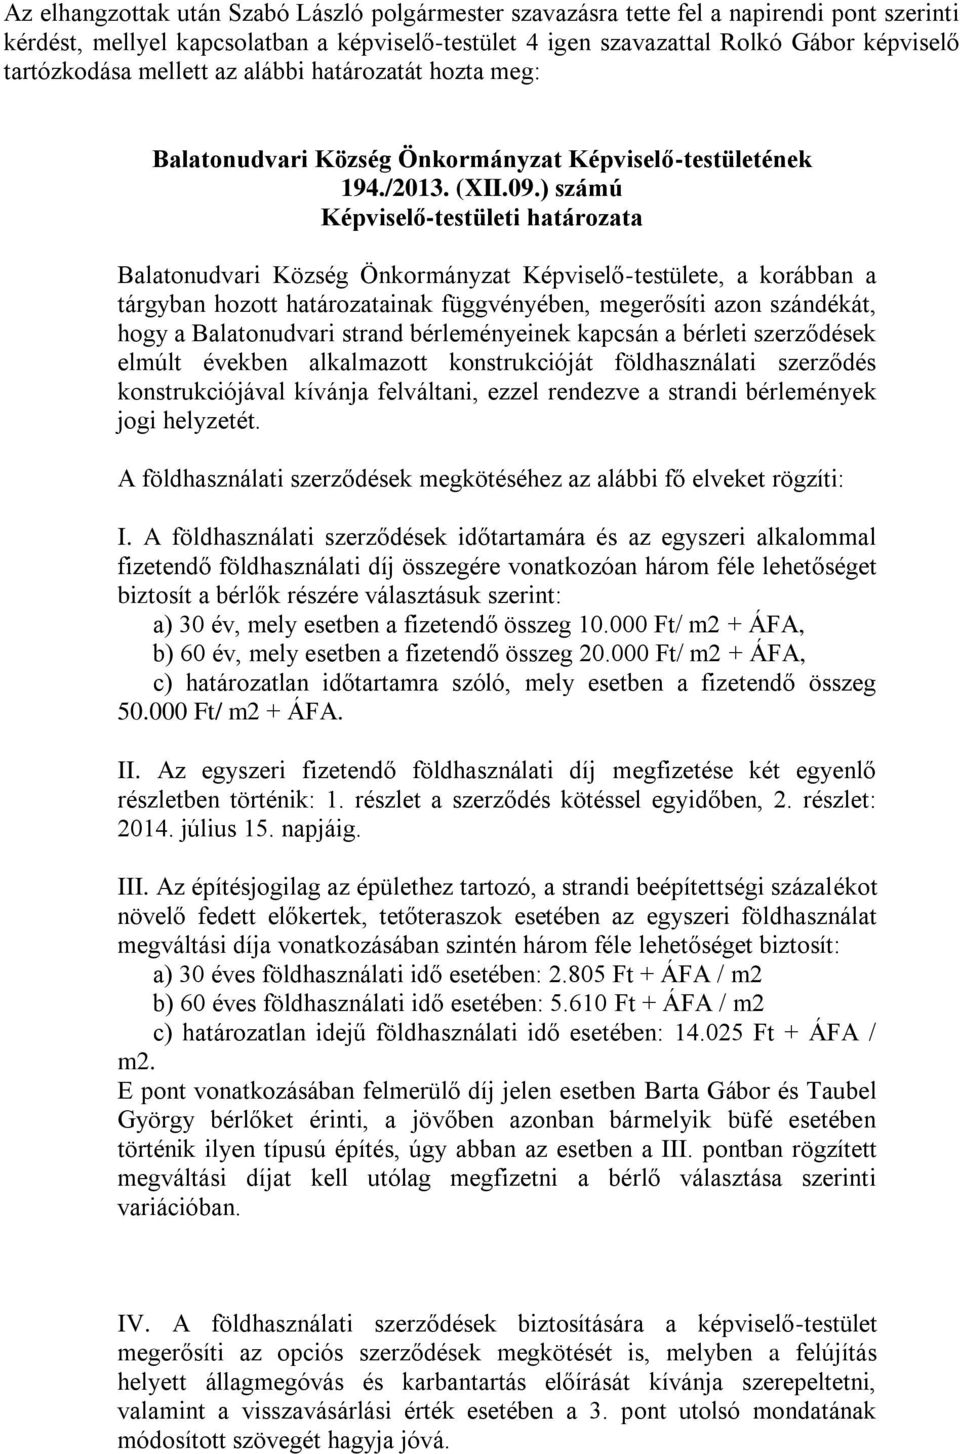 ) számú Balatonudvari Község Önkormányzat Képviselő-testülete, a korábban a tárgyban hozott határozatainak függvényében, megerősíti azon szándékát, hogy a Balatonudvari strand bérleményeinek kapcsán